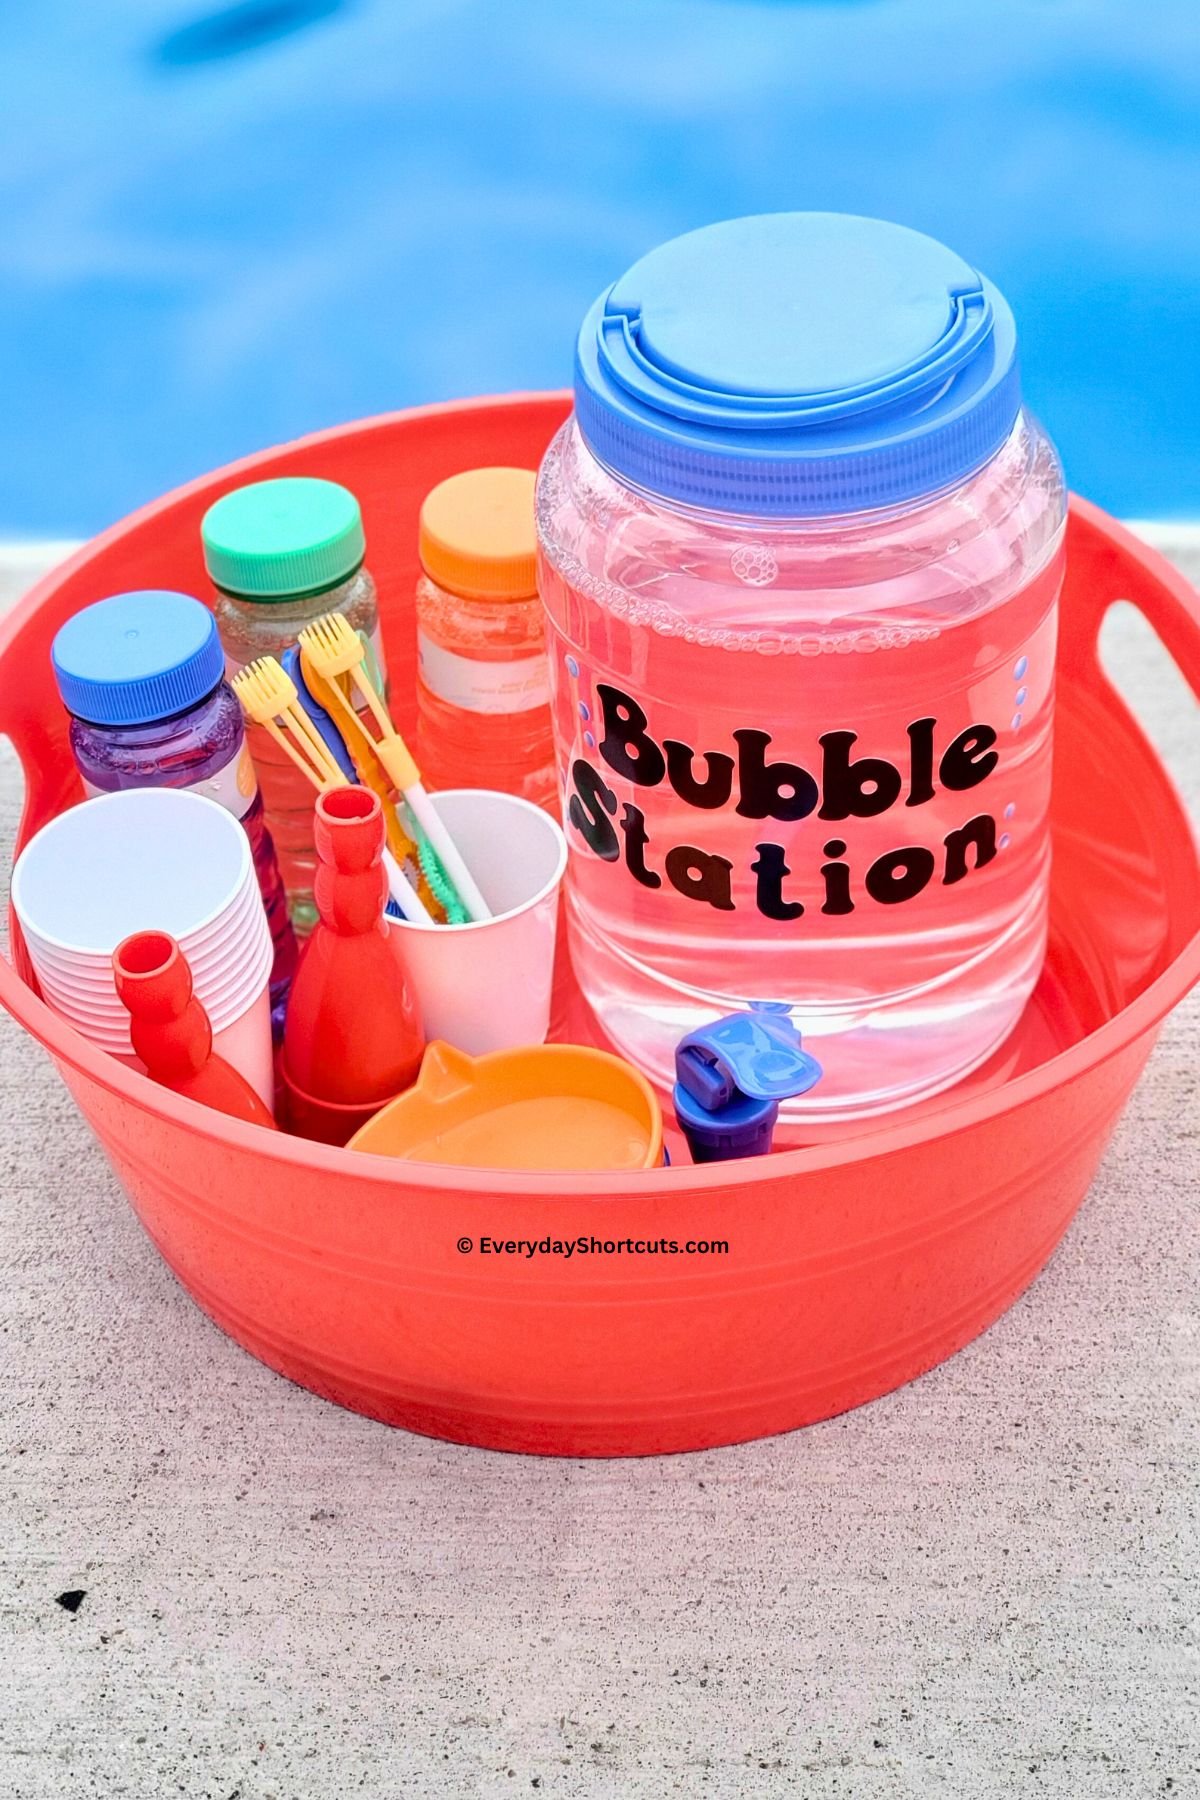 bubble station in a plastic bin